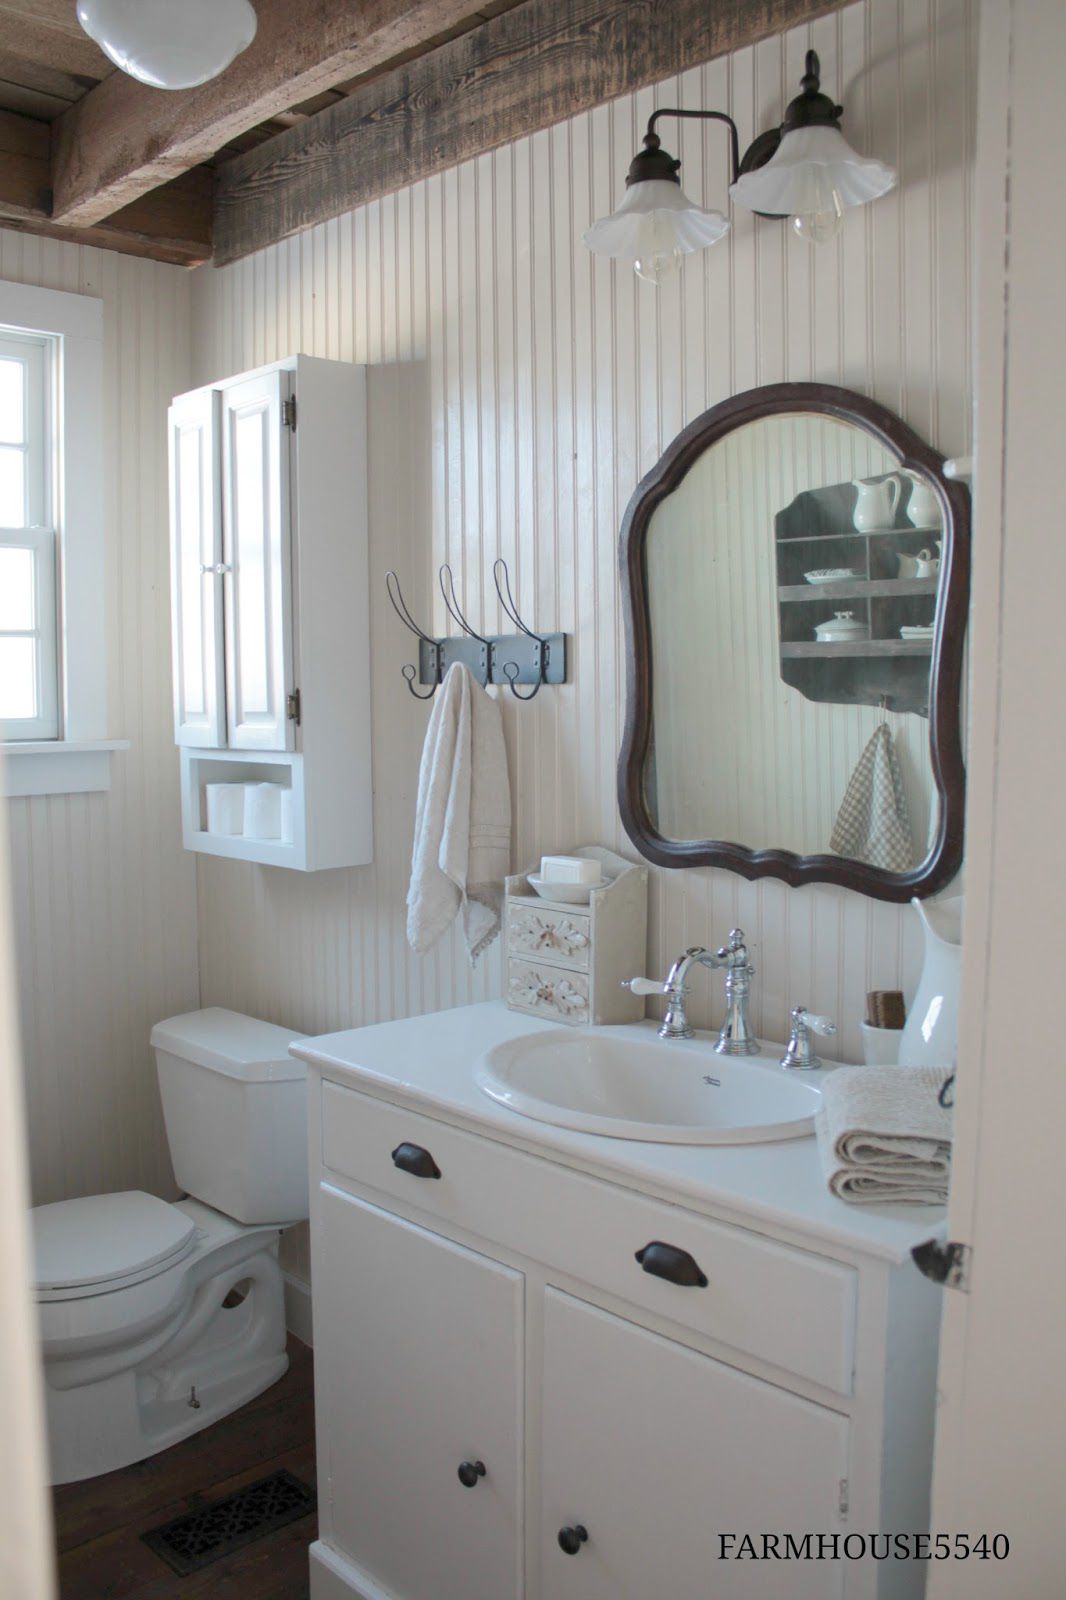 Um banheiro com painéis de madeira em estilo rústico de casa de fazenda